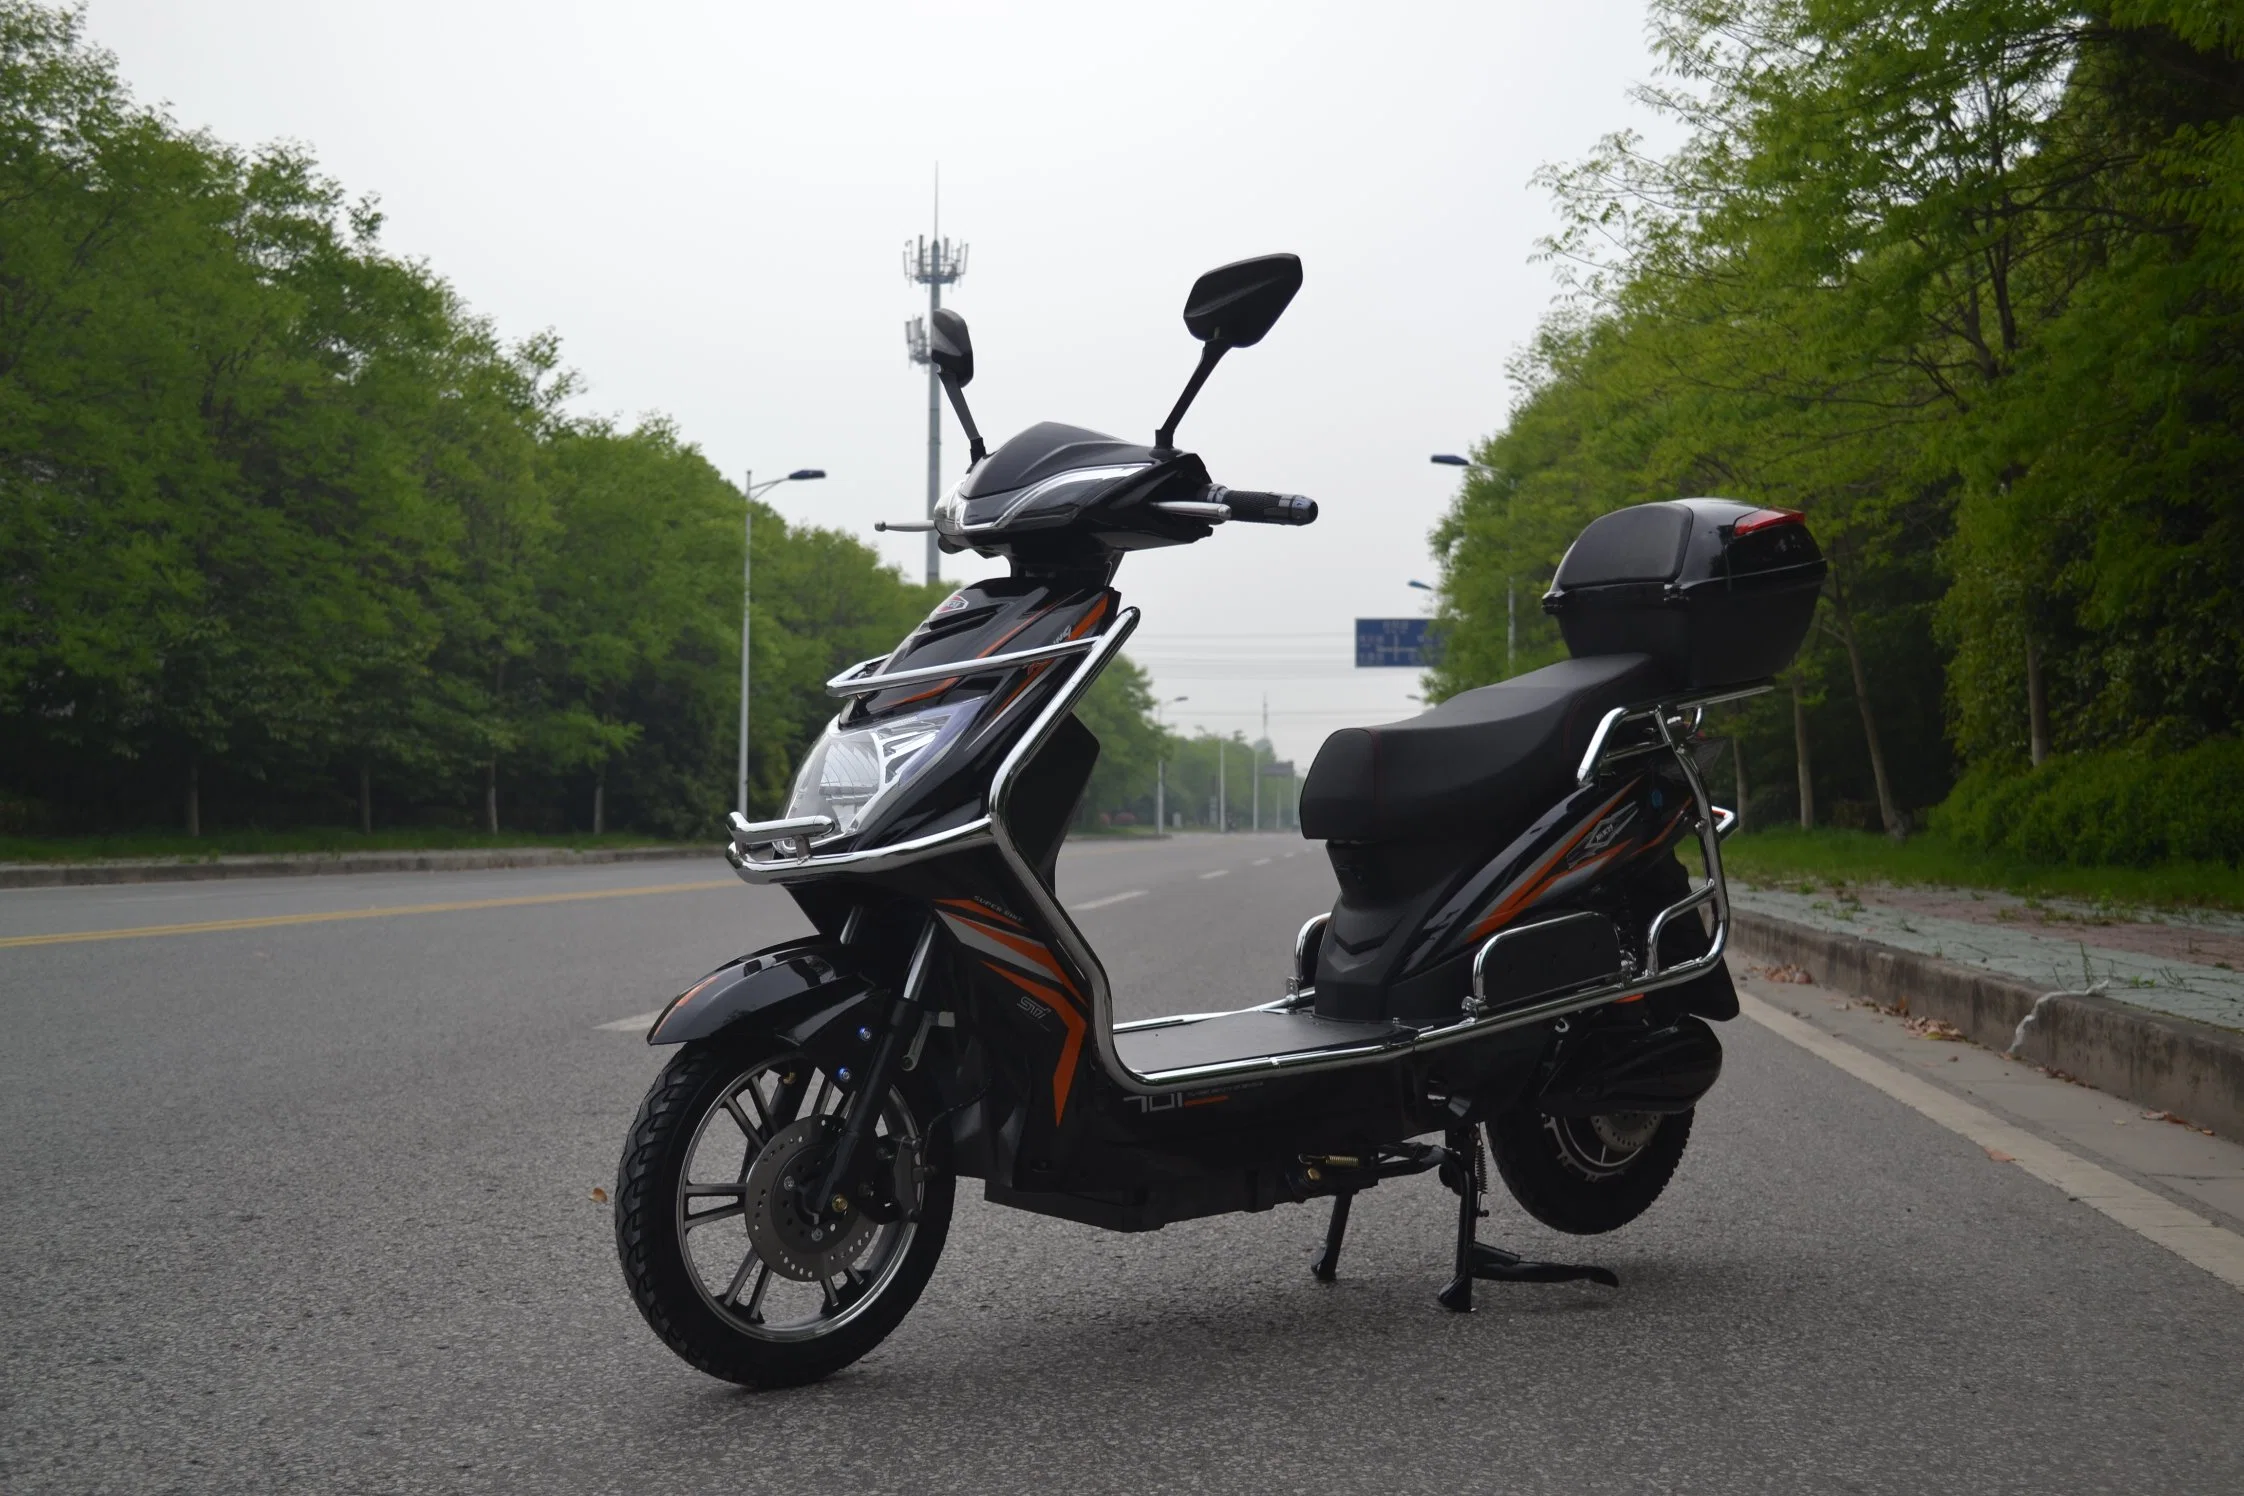 Caliente de fábrica y de la ciudad de barata motocicleta eléctrica extraíble de la batería de larga distancia